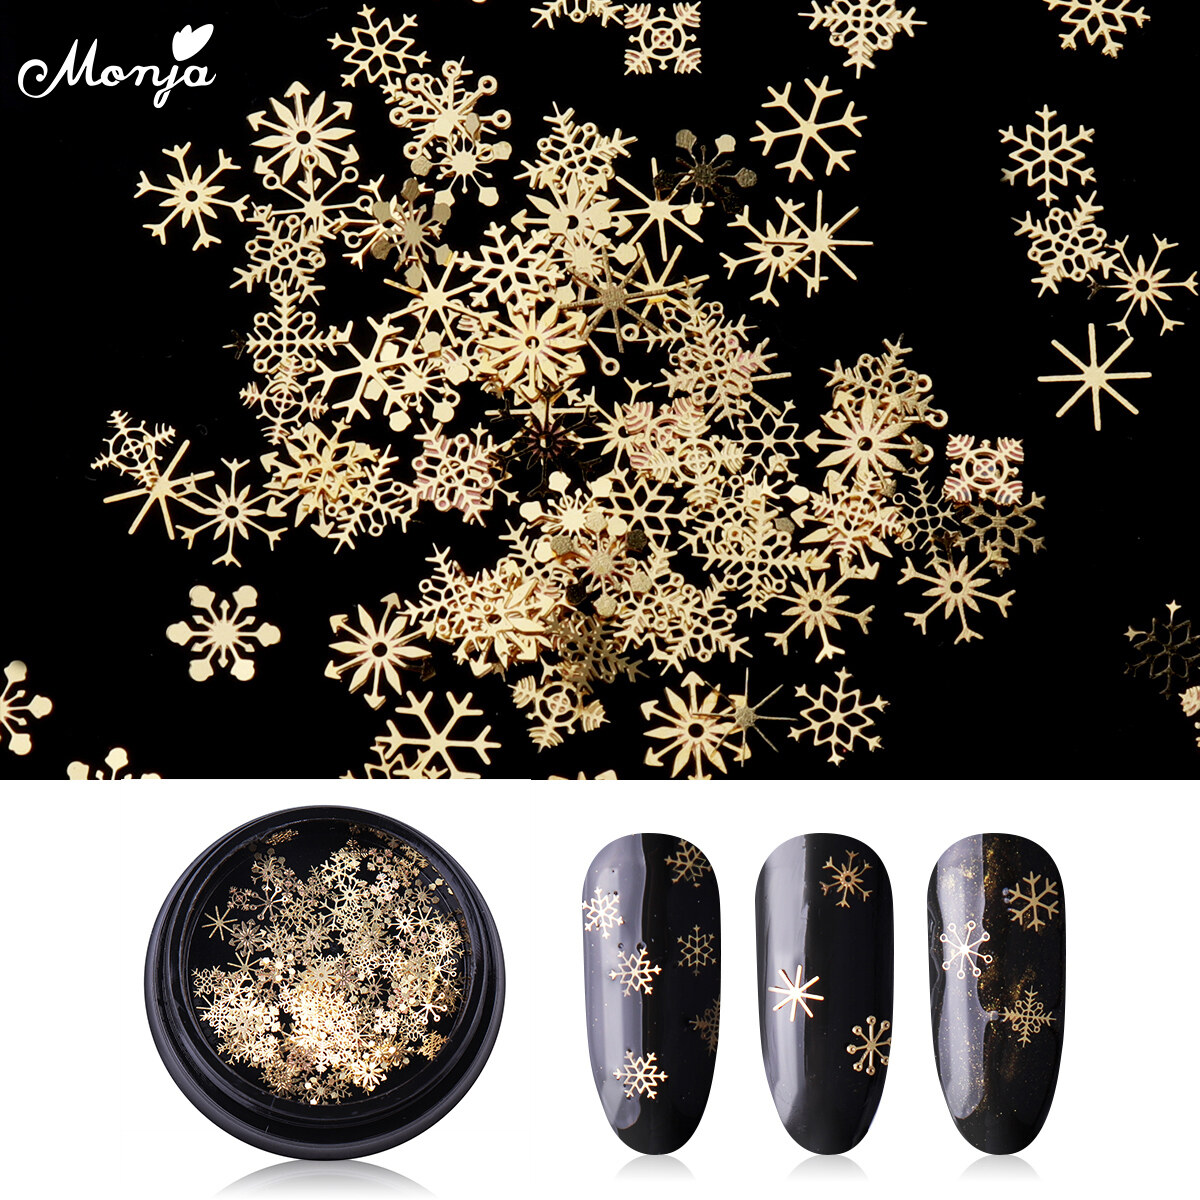 Hình ảnh 4 Mét Nail Art Kim Loại Giáng Sinh Vàng Glitter Flakes Bông Tuyết Hỗn Hợp DIY 3D Sparkles Sequins Decals Làm Móng Tay Trang Trí